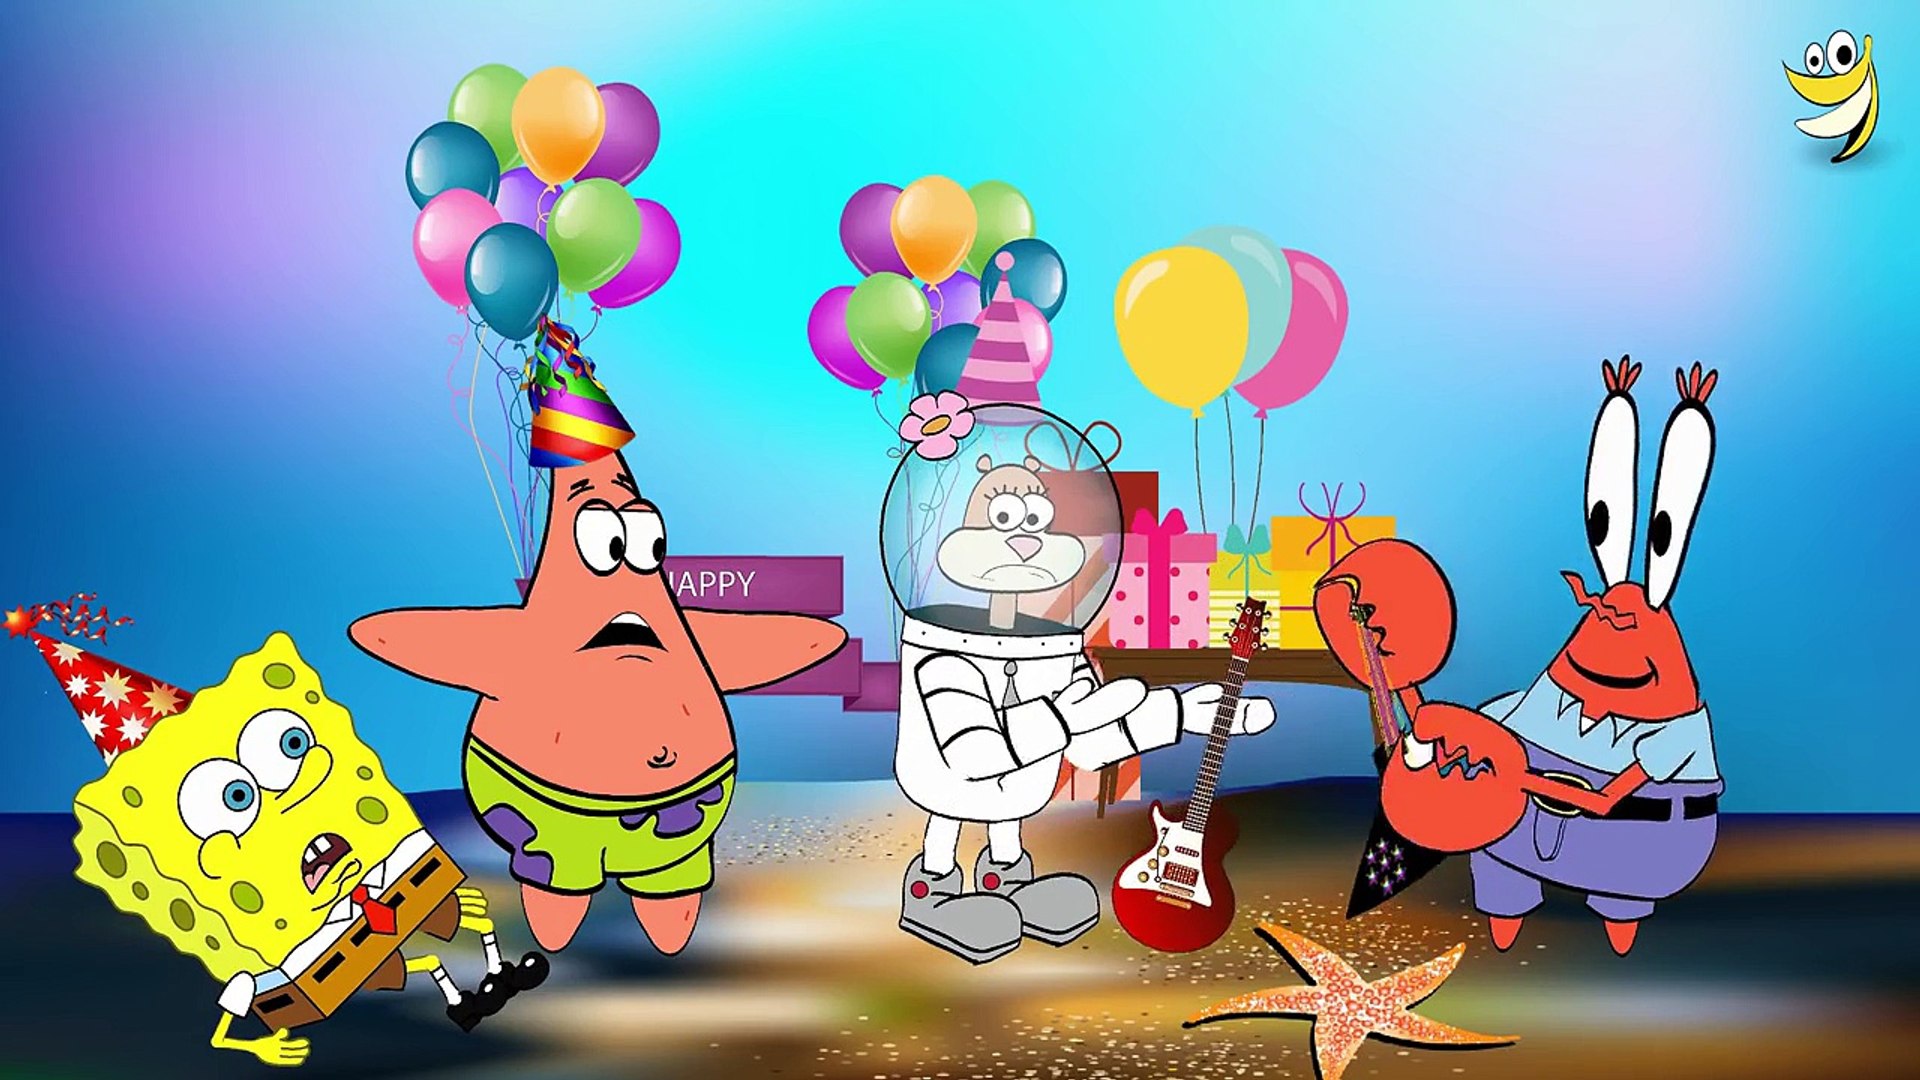 Bạn đang tìm kiếm một bài hát sinh nhật đặc biệt cho bữa tiệc của mình? Spongebob Squarepants Happy Birthday Song sẽ khiến cho buổi tiệc của bạn trở nên đầy sôi động và vui tươi hơn bao giờ hết. Xem hình ảnh để khám phá ngay bây giờ.